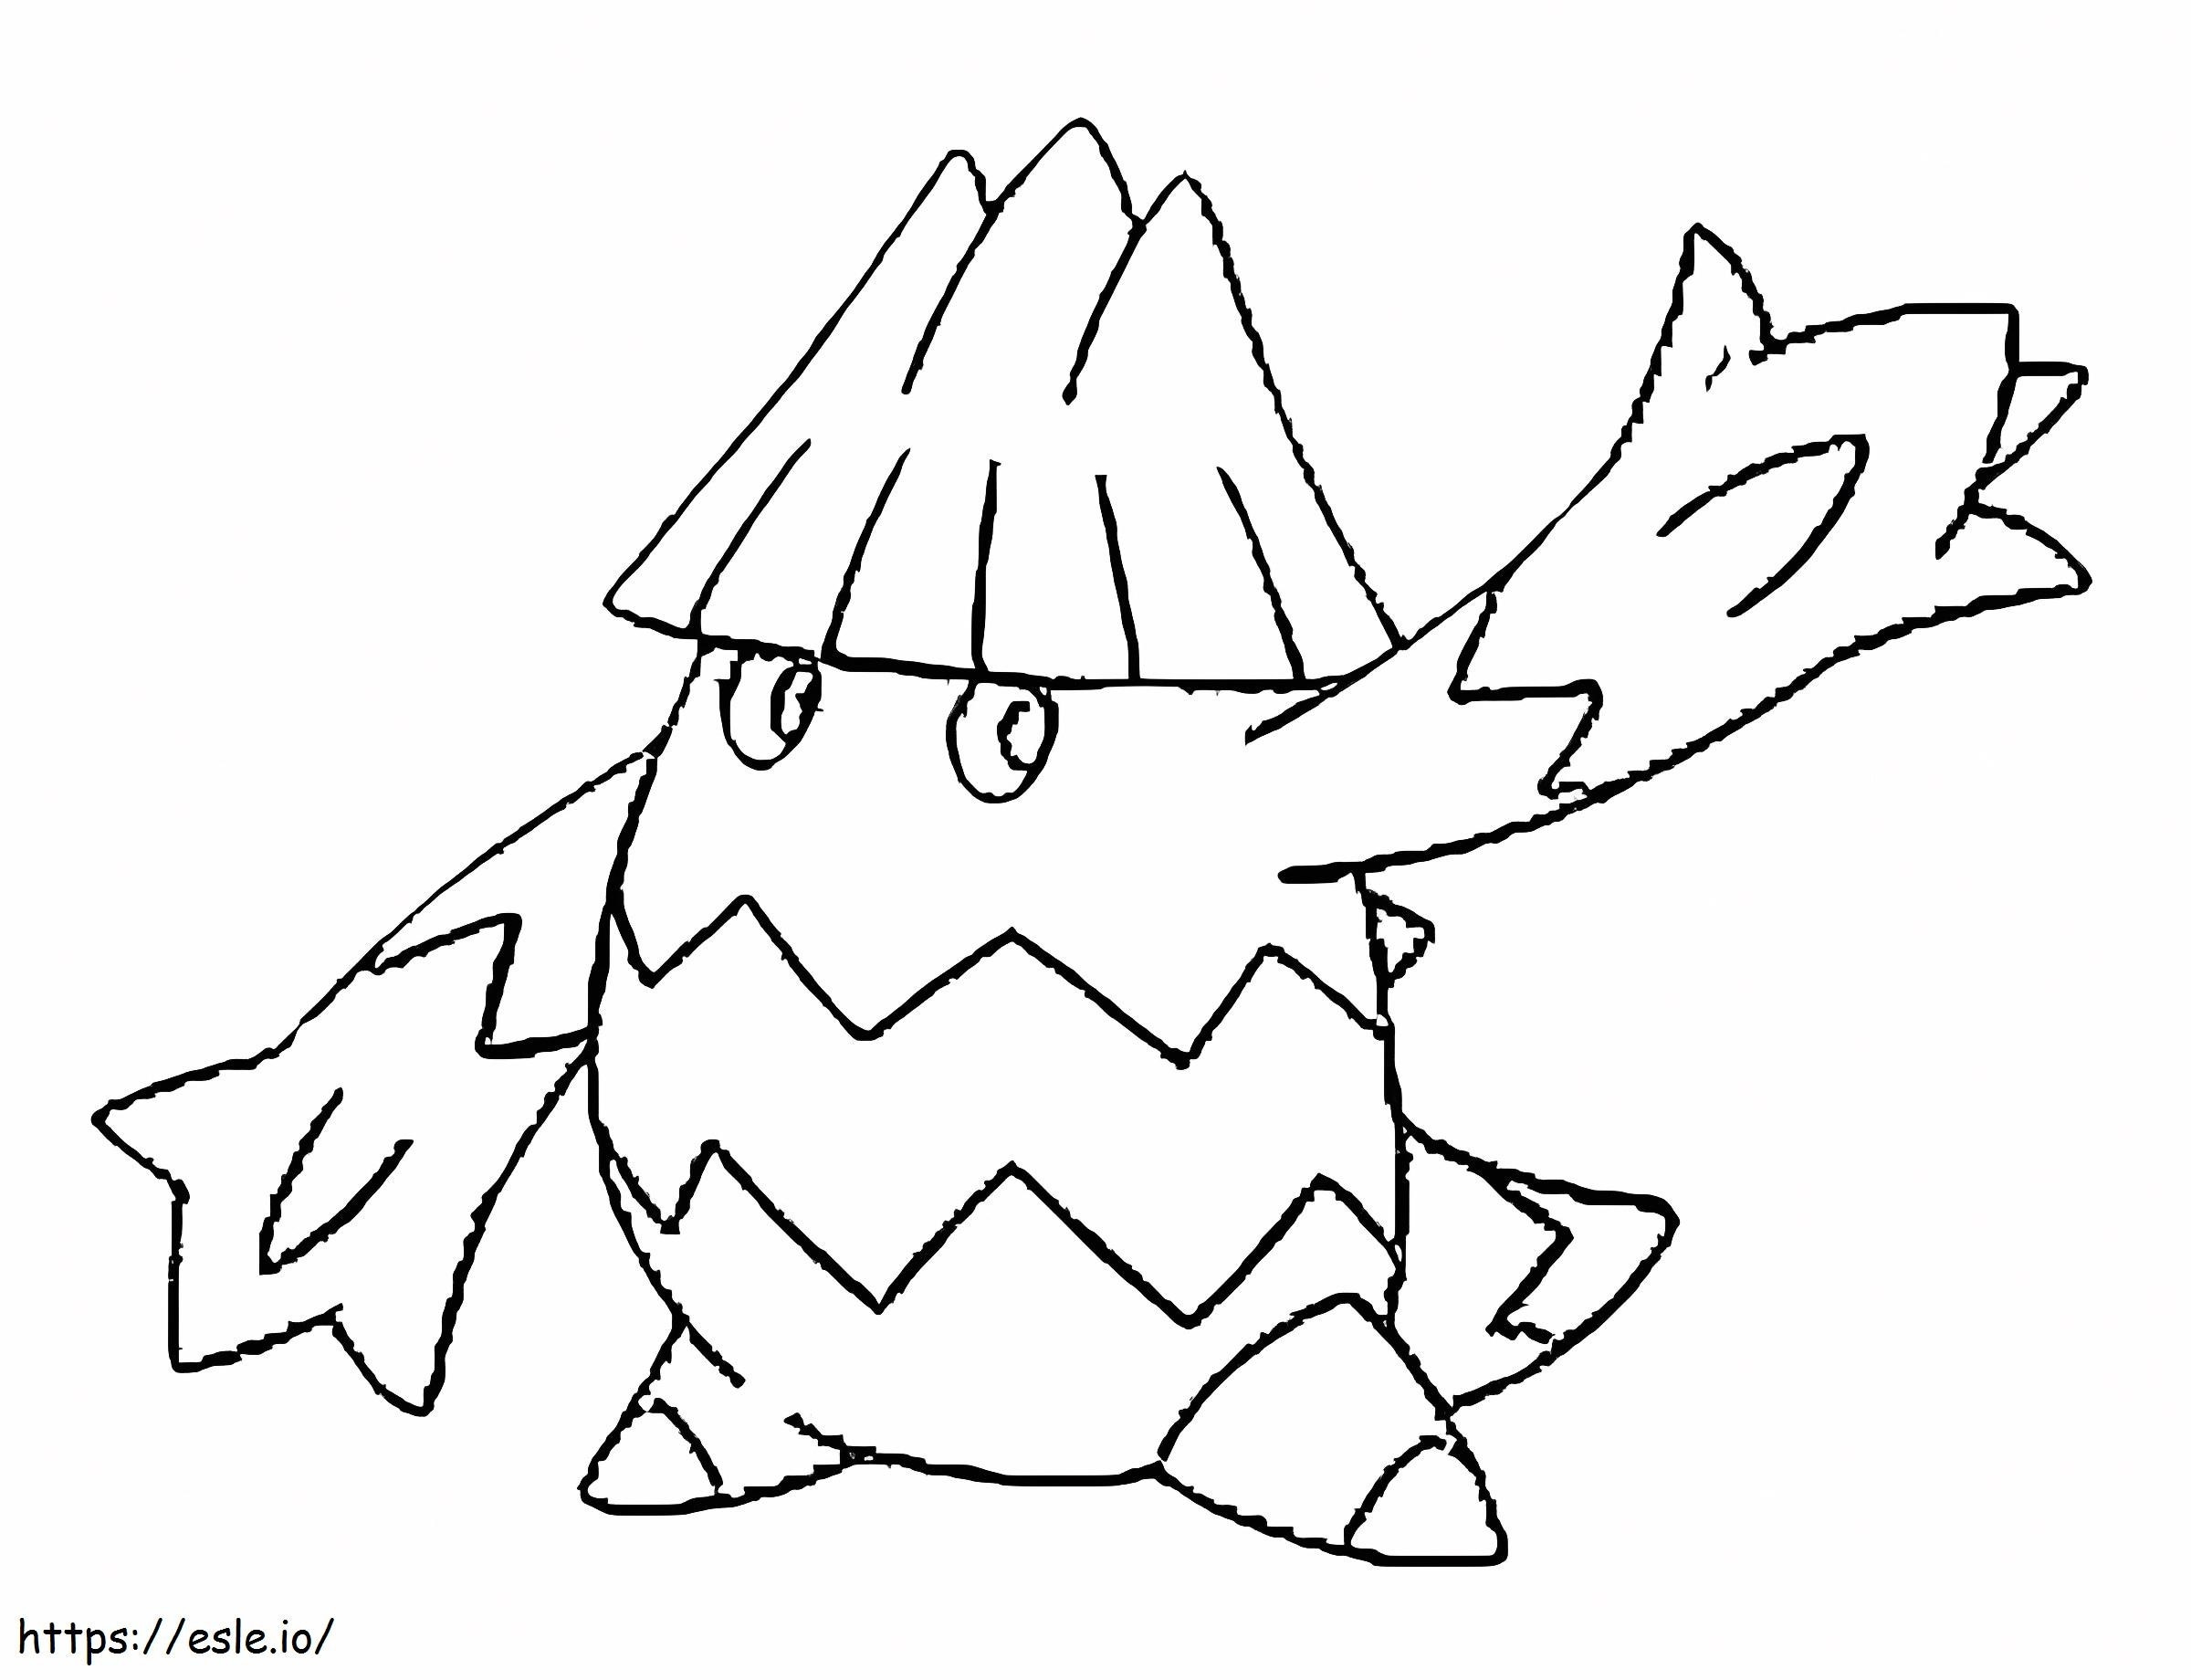 Coloriage Pokémon Snover Gen 4 à imprimer dessin